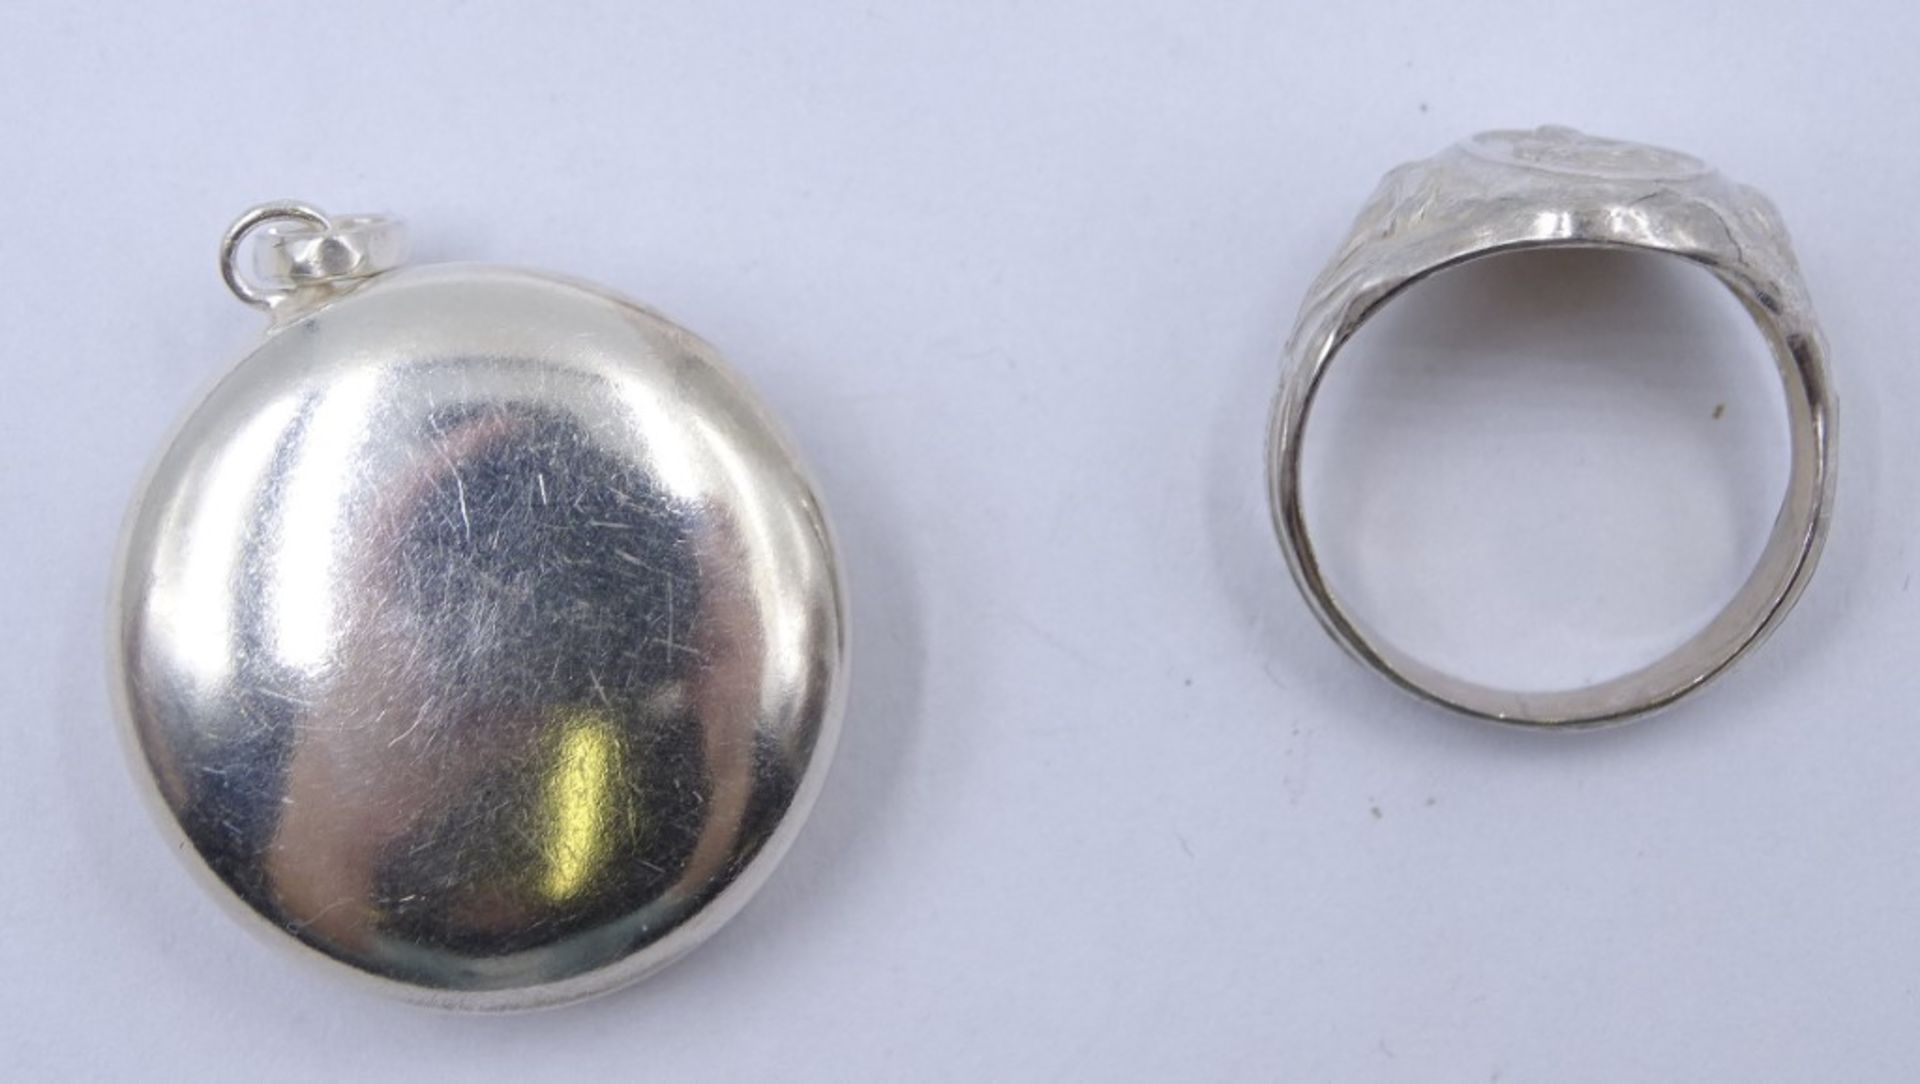 800er-Silberring und Medaillondöschen aus Metall mit Mariendarstellungen, Ring: 4,7 gr., RG 59, Ø M - Image 5 of 5